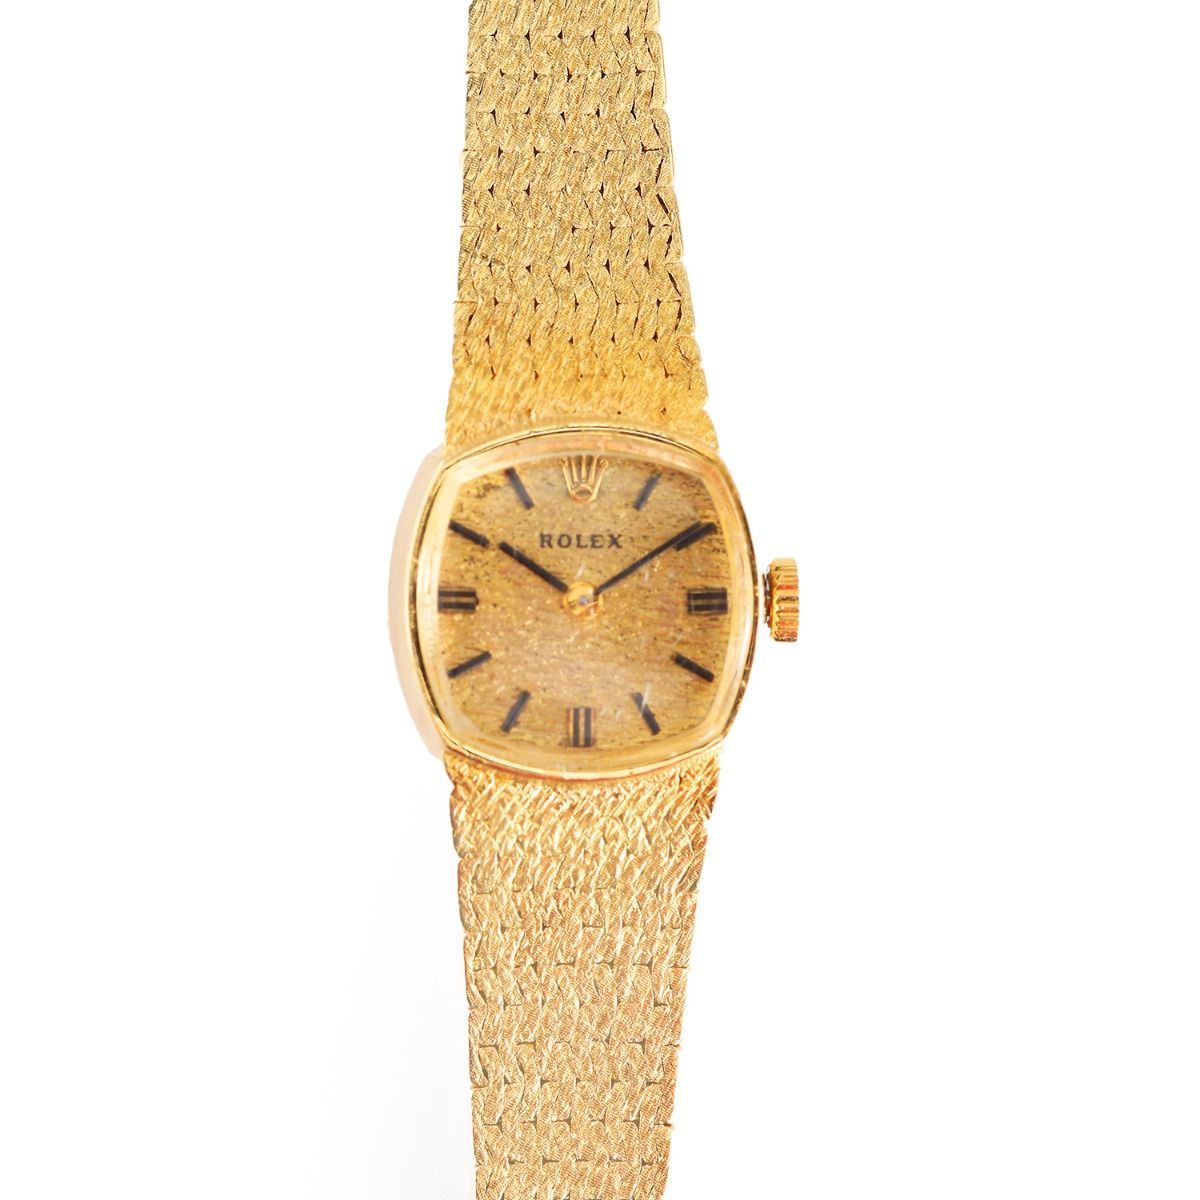 Vintage Rolex Yellow Gold Rolex Watch Circa 1960's